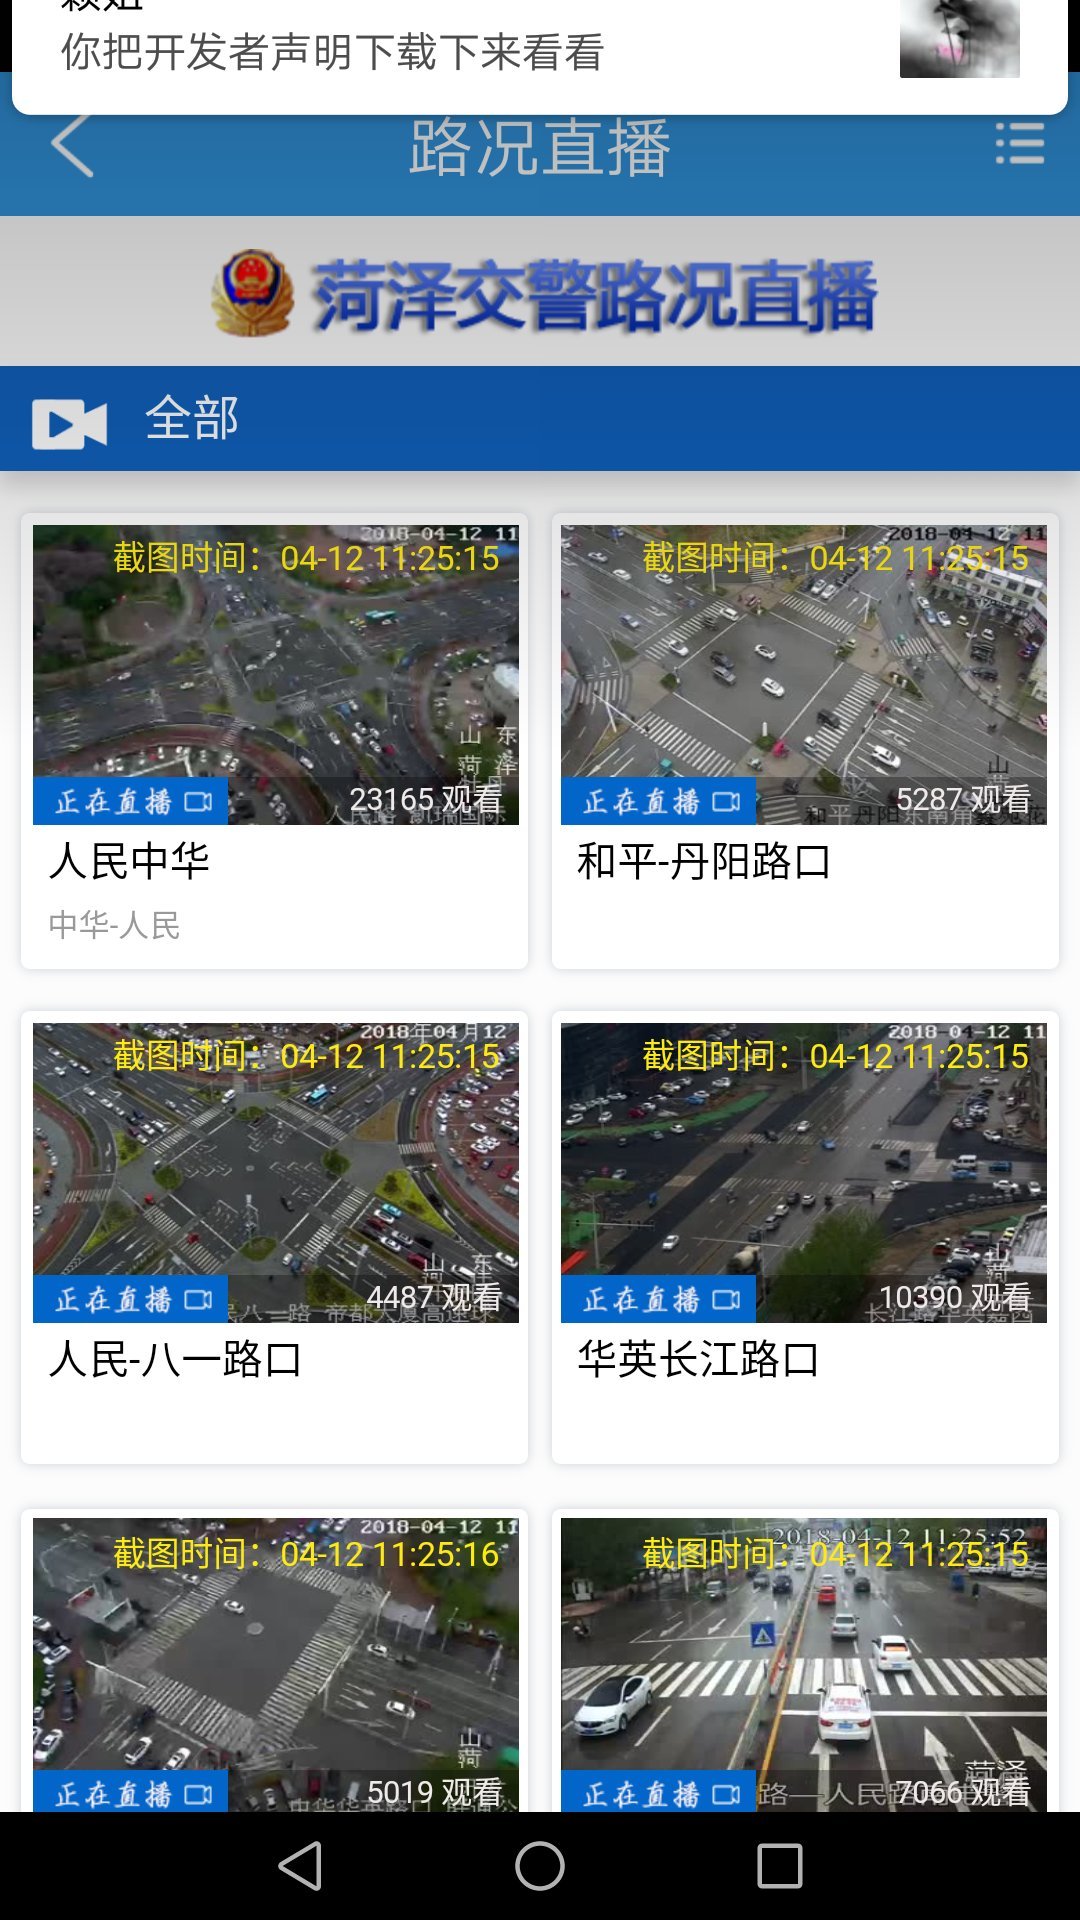 菏易行app1.2.34-release